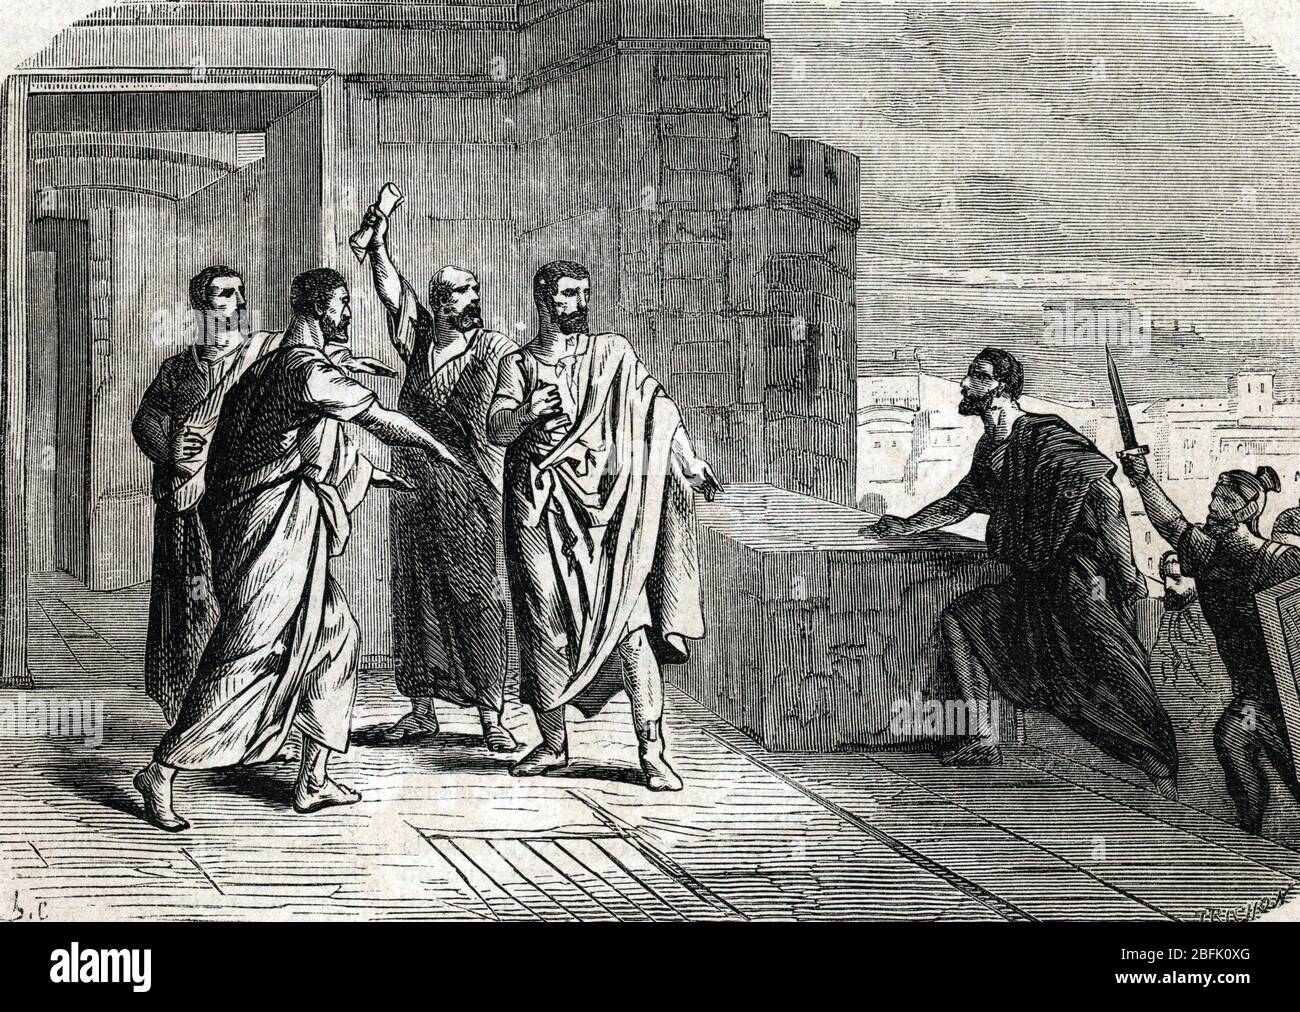 Antiquite Romaine Tiberius Gracchus 168 133 Avant Jc Se Refugiant Dans Le Capitole Lors D Emeutes Tiberius Gracchus Hinding In Campidoglio 133 Stockfotografie Alamy